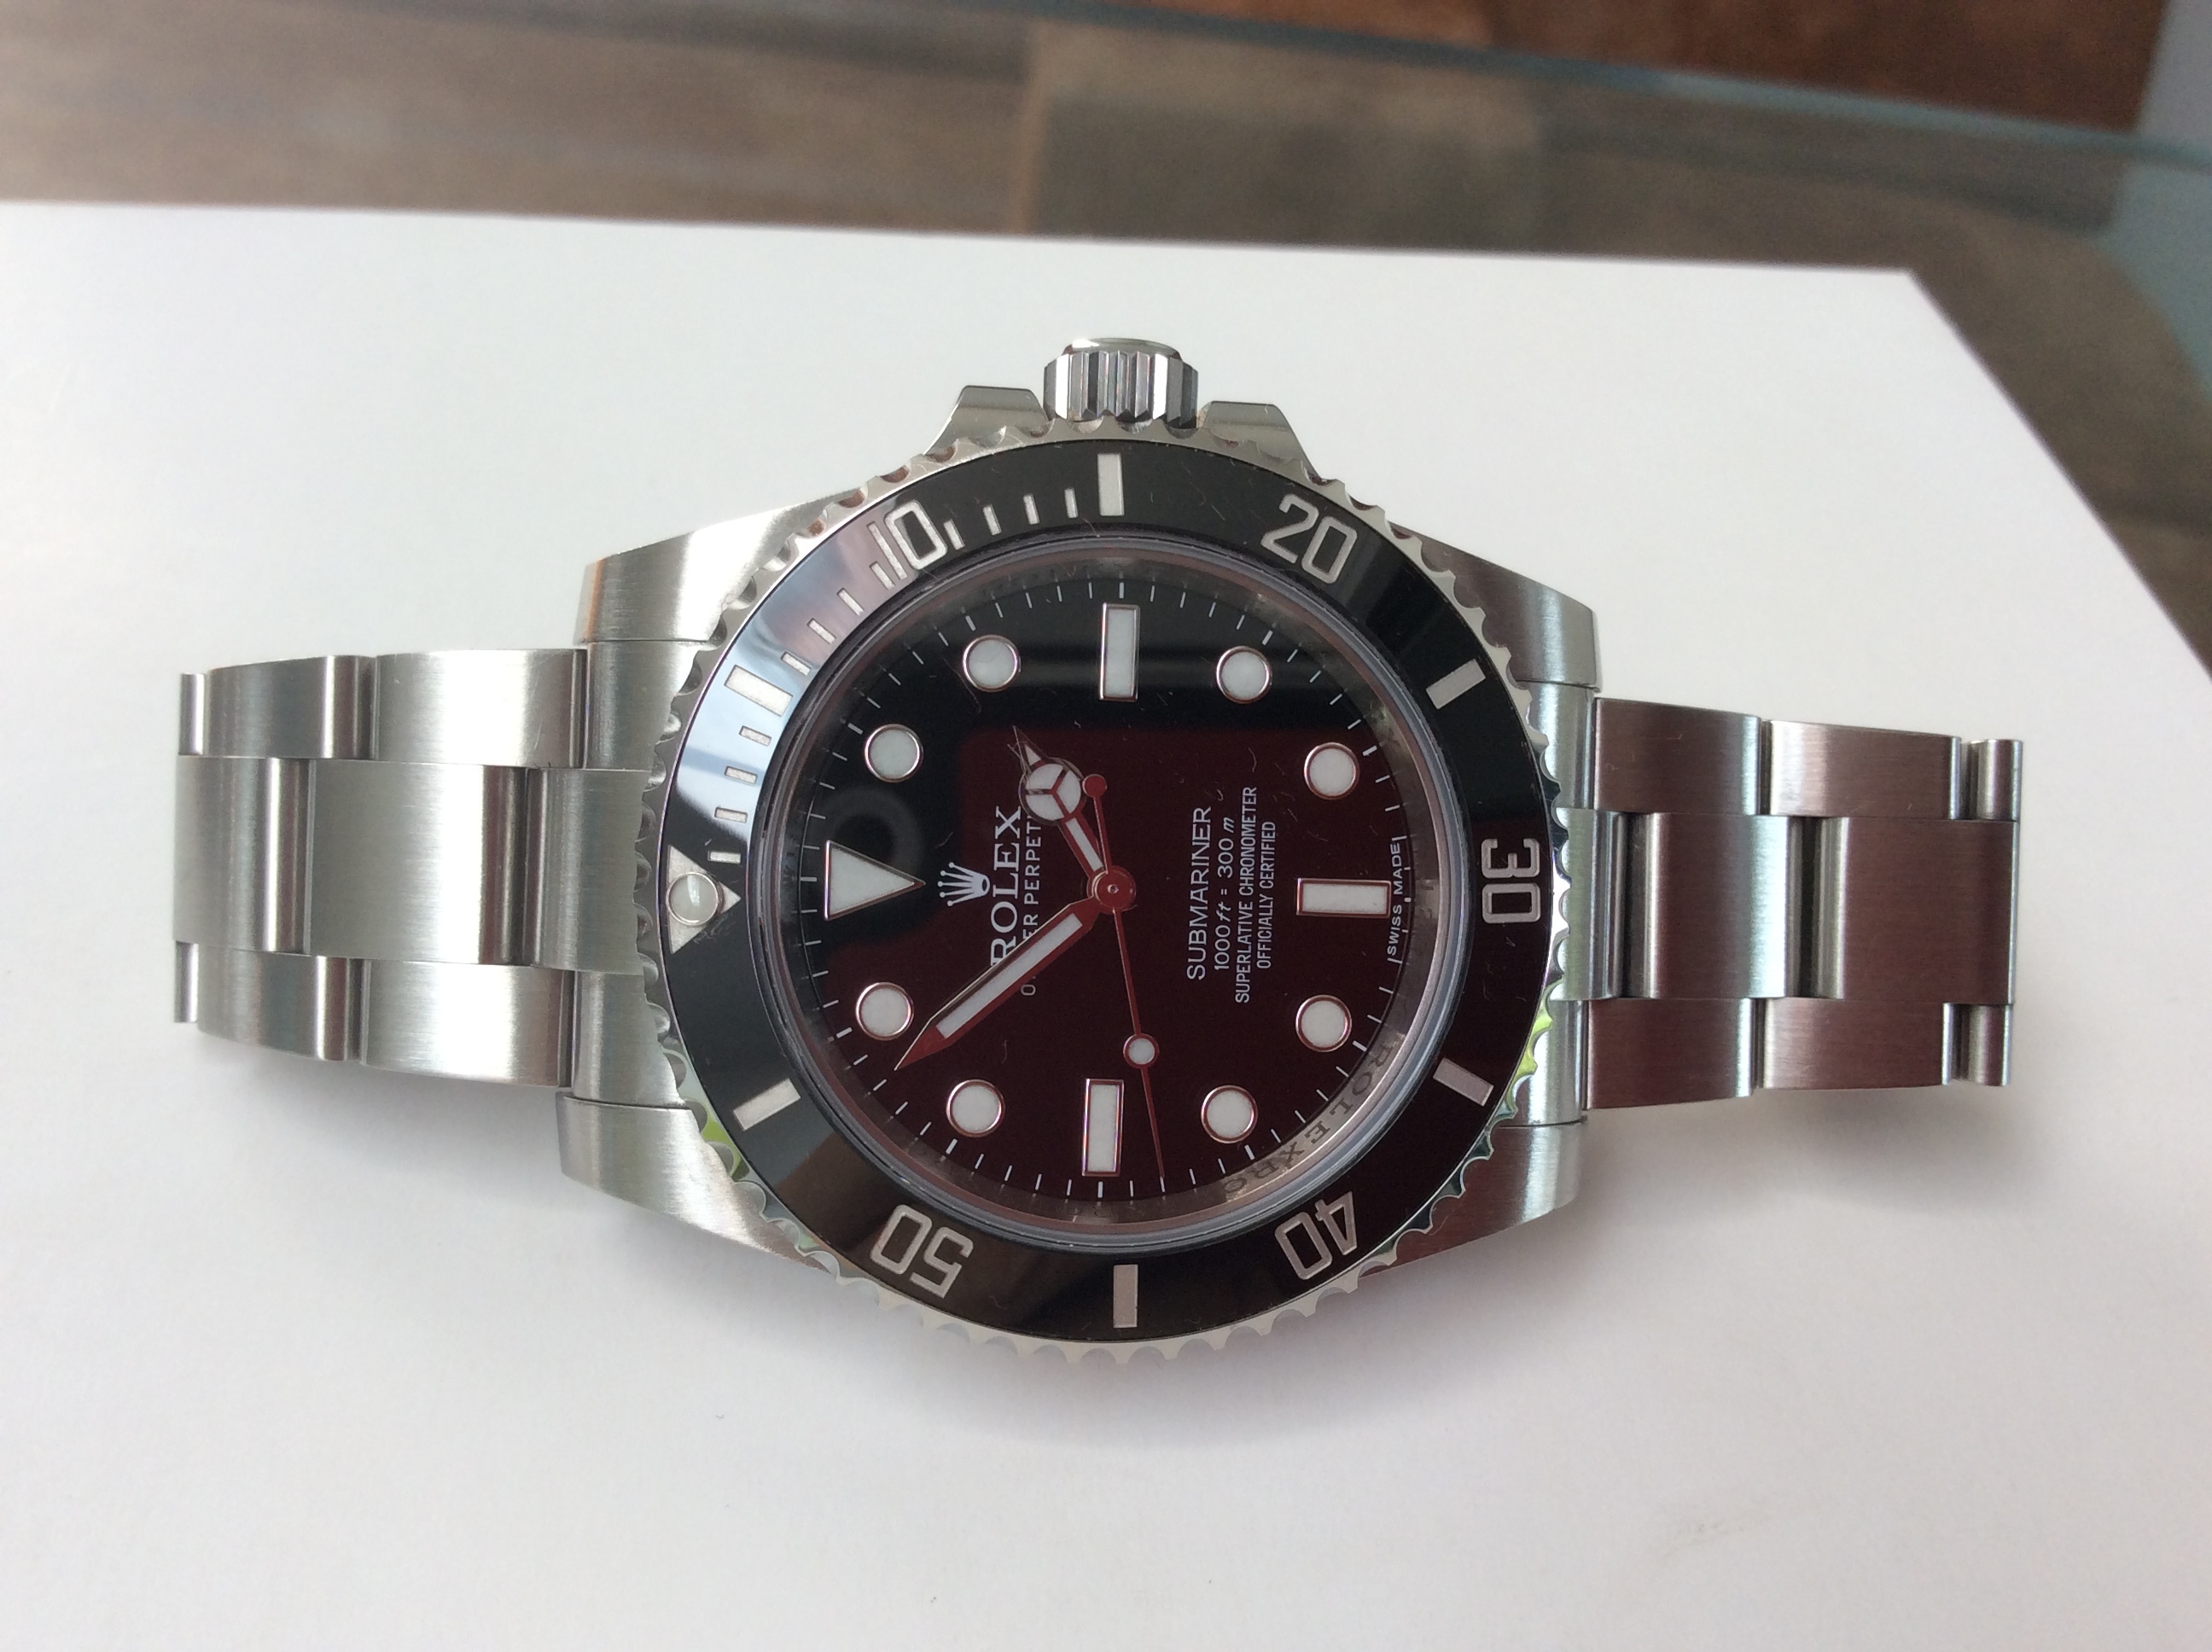 Staan voor Verslijten bodem Slotje: Rolex submariner no Date 114060 2015 - Horlogemarkt (archief) -  Horlogeforum.nl - het forum voor liefhebbers van horloges